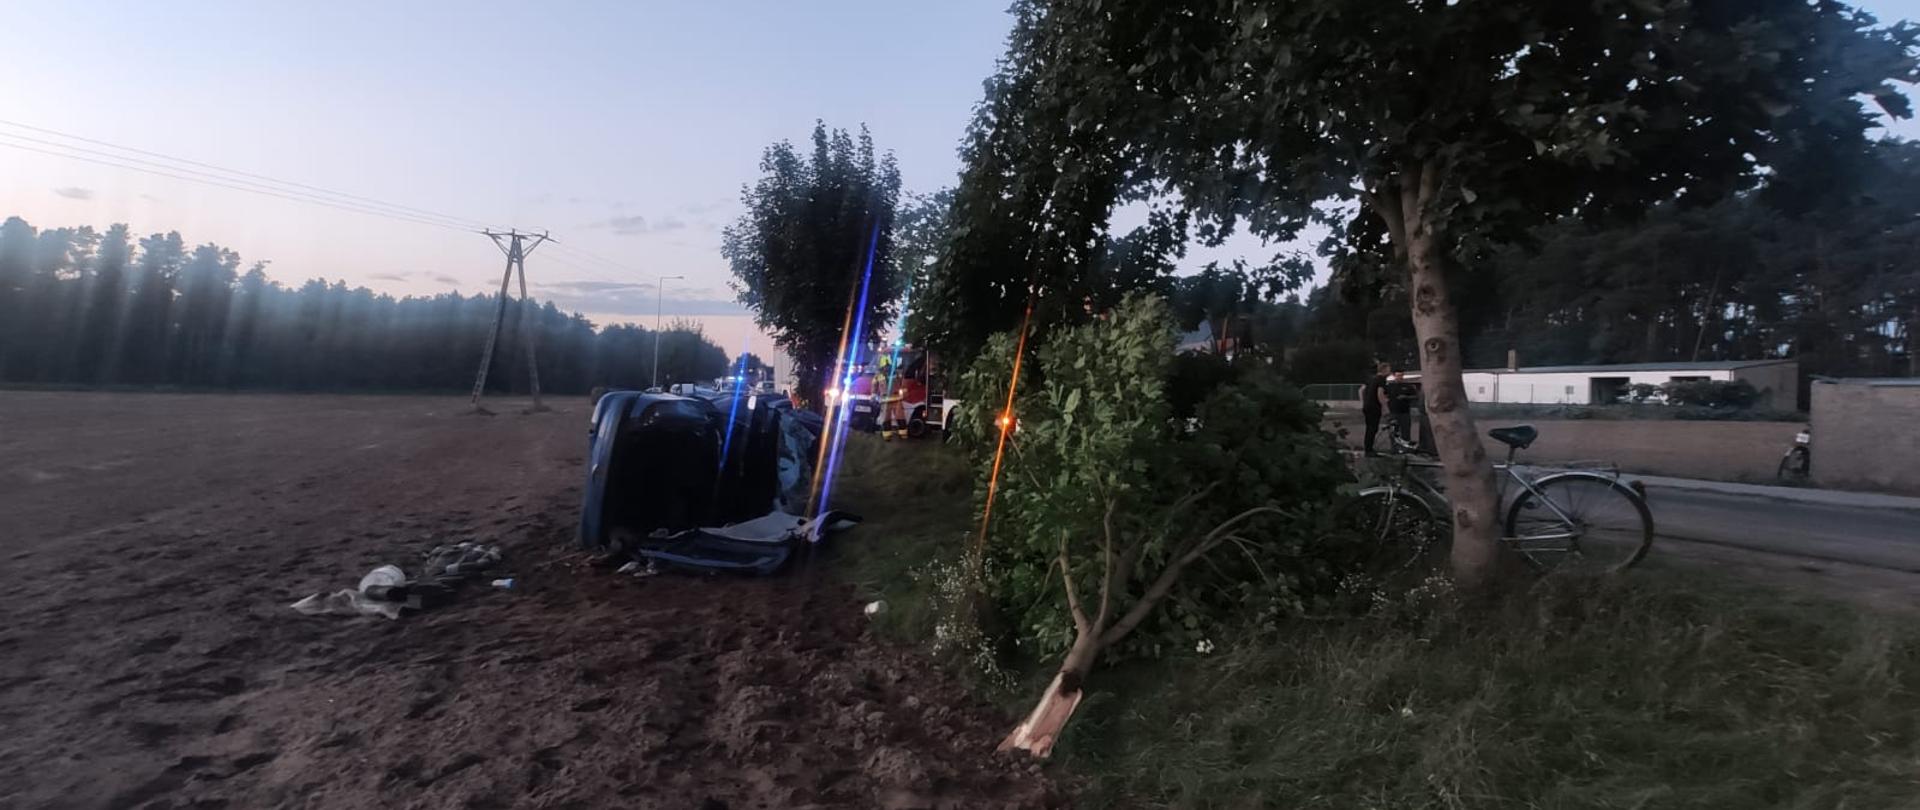 Zdjęcie przedstawia samochód osobowy, który po wypadnięciu z drogi leży na boku. Przy pomocy narzędzi hydraulicznych został odcięty dach samochodu. Zdjęcie zrobione na poboczu drogi, obok rosna drzewa.